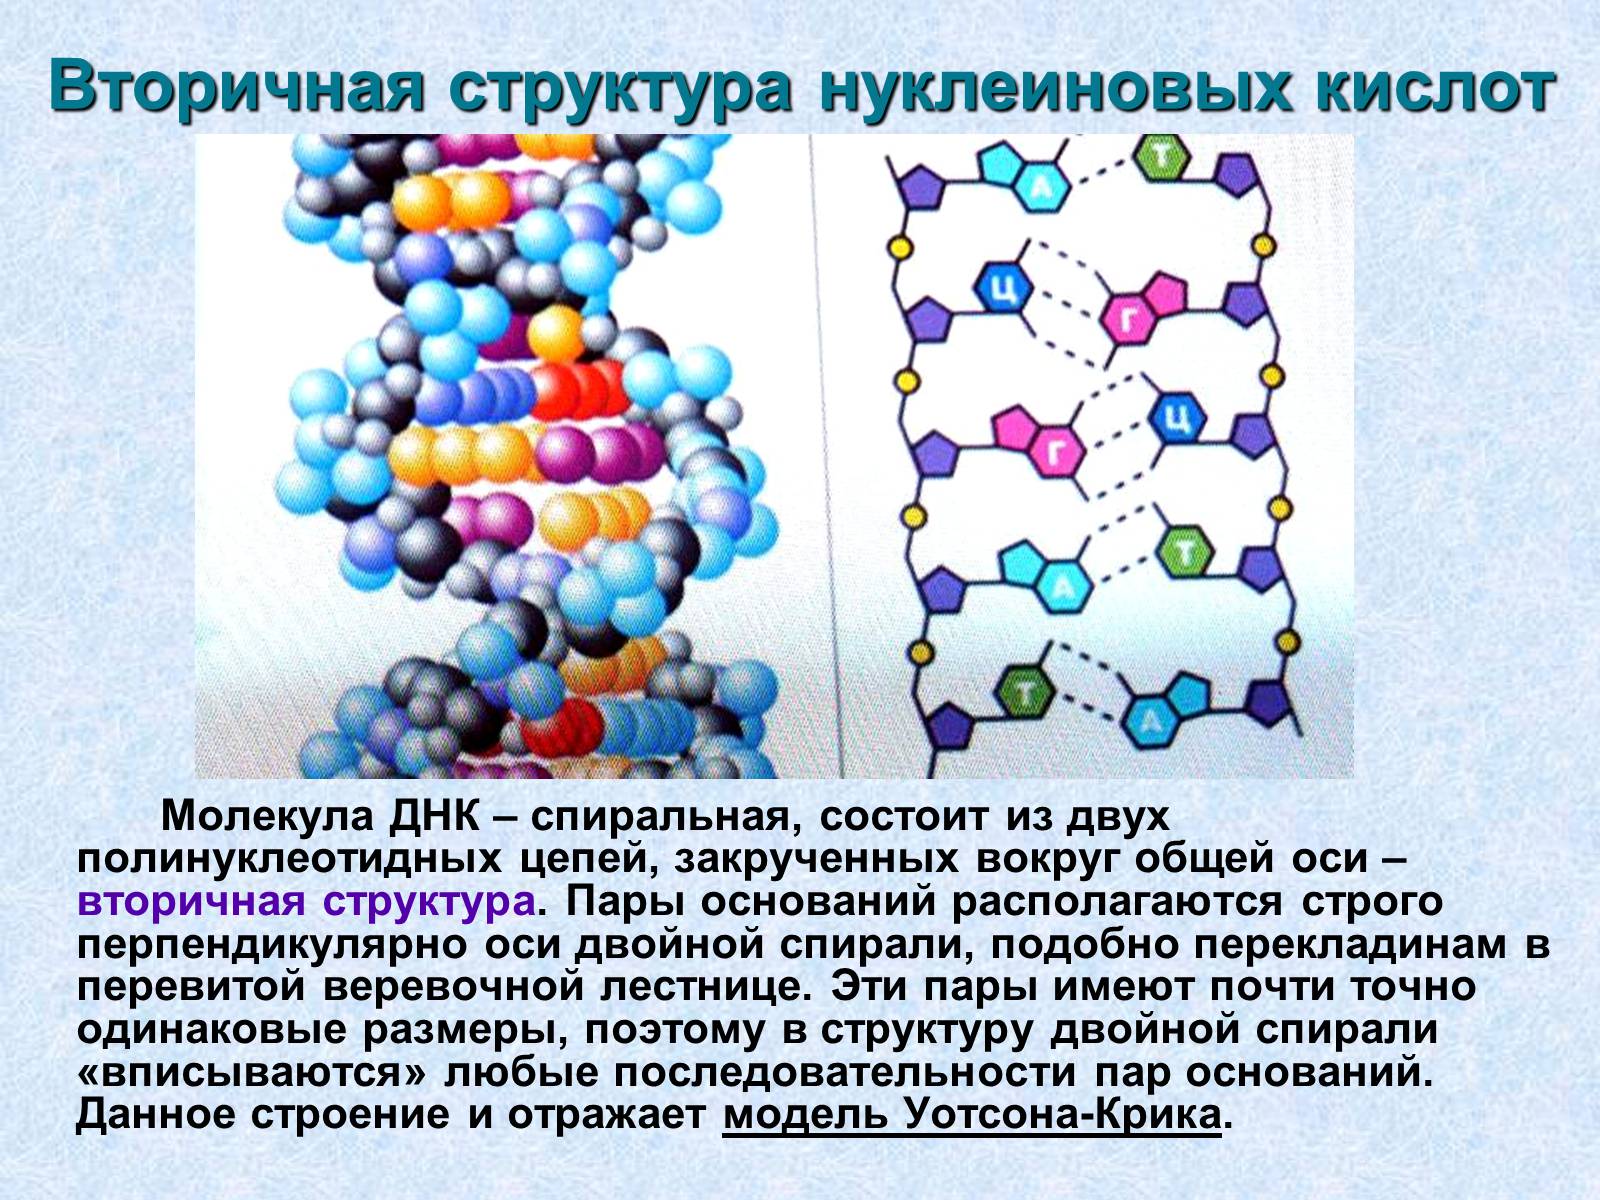 Структура нуклеиновых кислот днк. Первичная и вторичная структура нуклеиновых кислот. Первичная вторичная и третичная структура нуклеиновых кислот. Первичная структура нуклеиновых кислот рисунок. Первичная и вторичная структура нуклеиновых кислот связи.